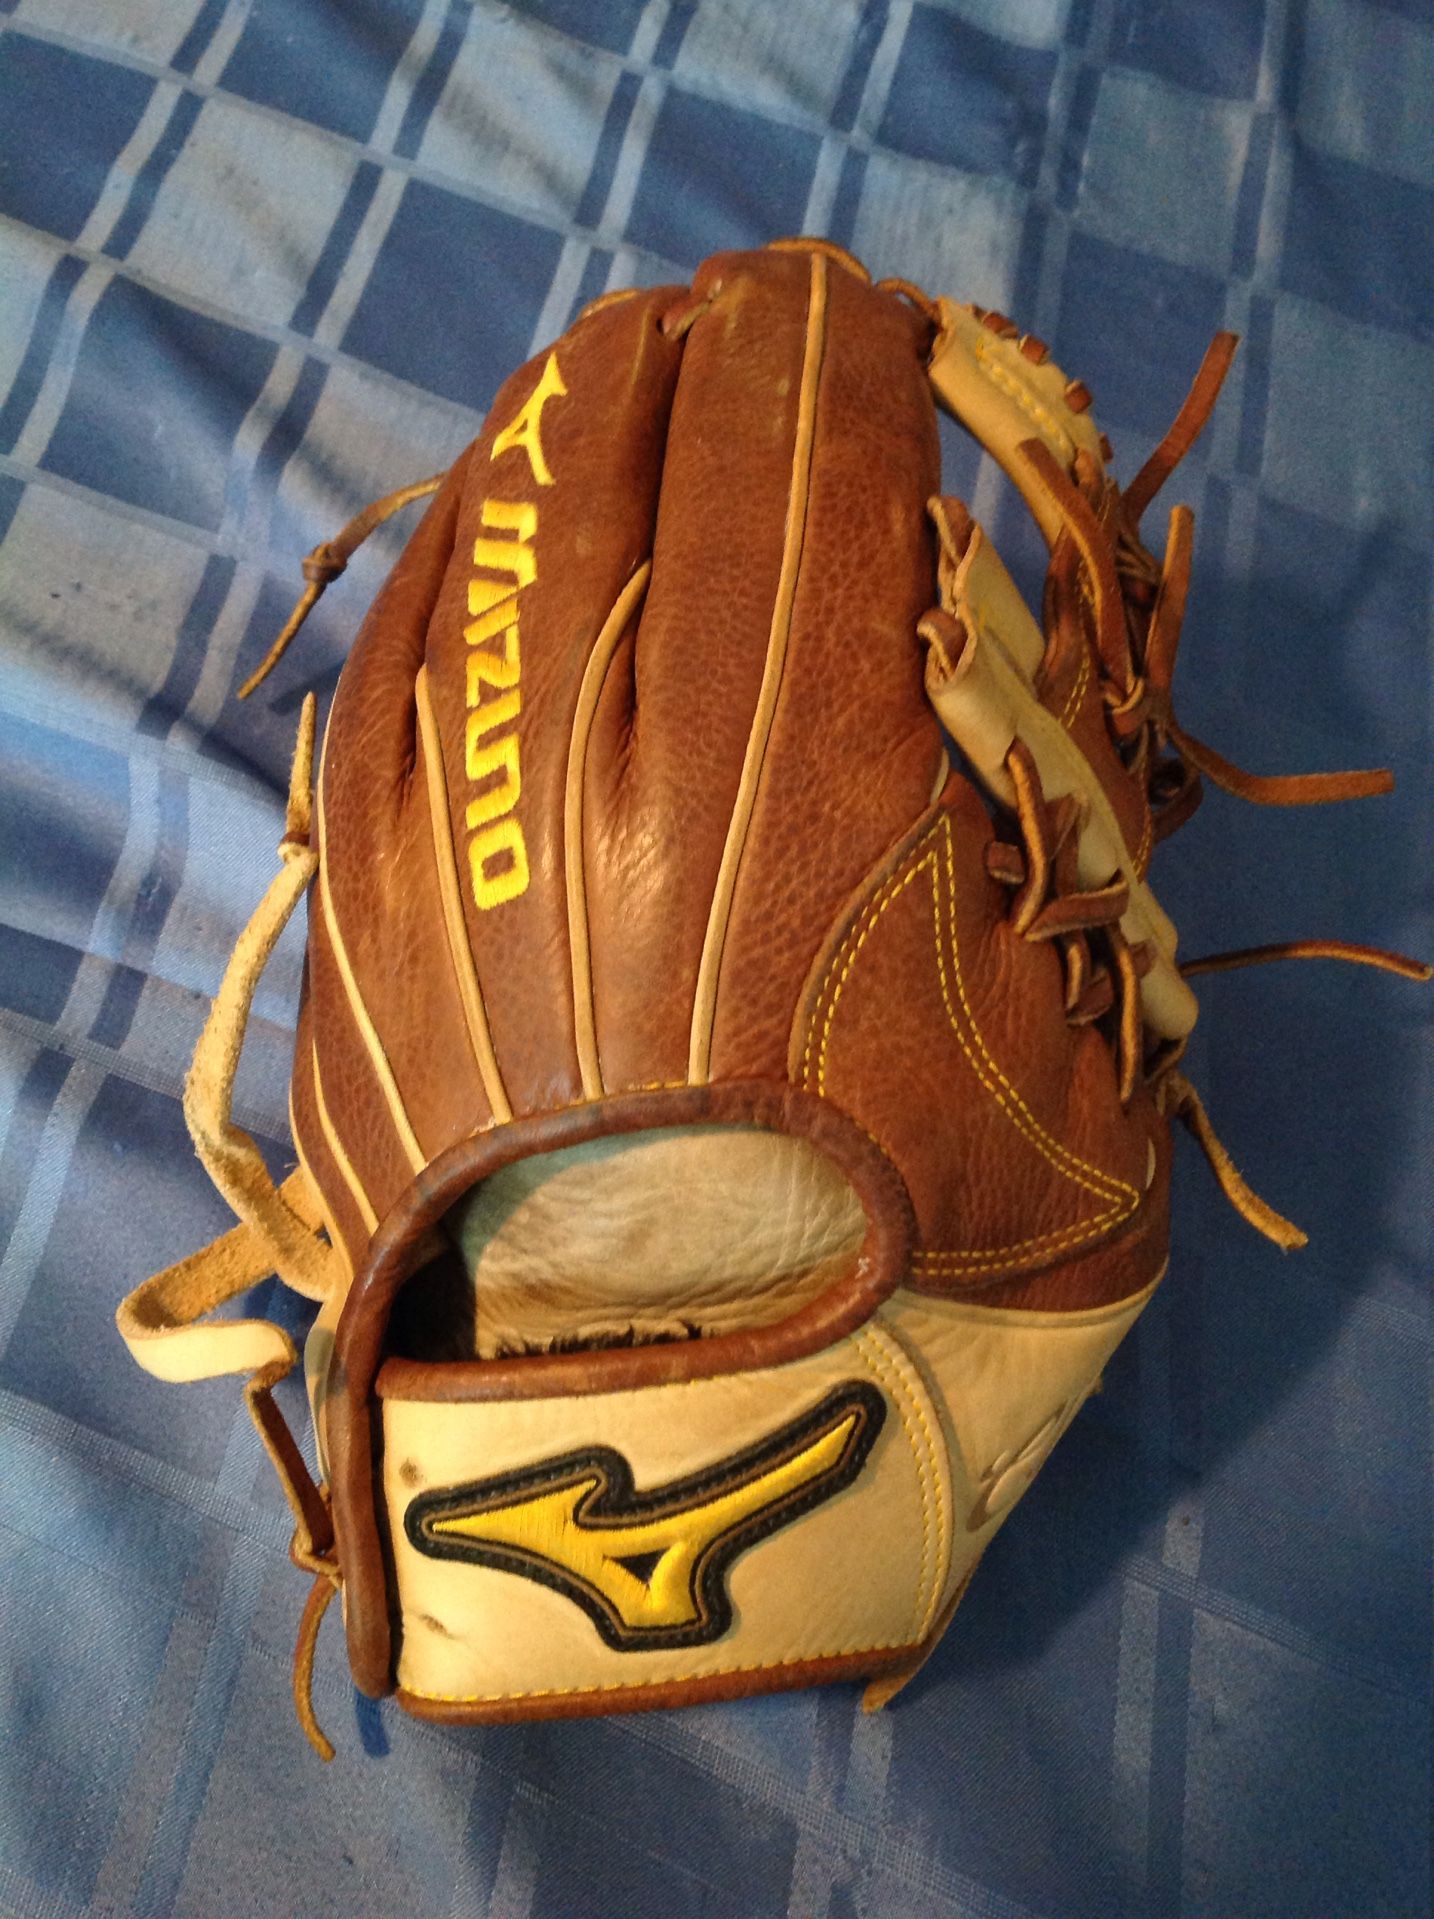 Mizuno 11 1/2 inch softball glove